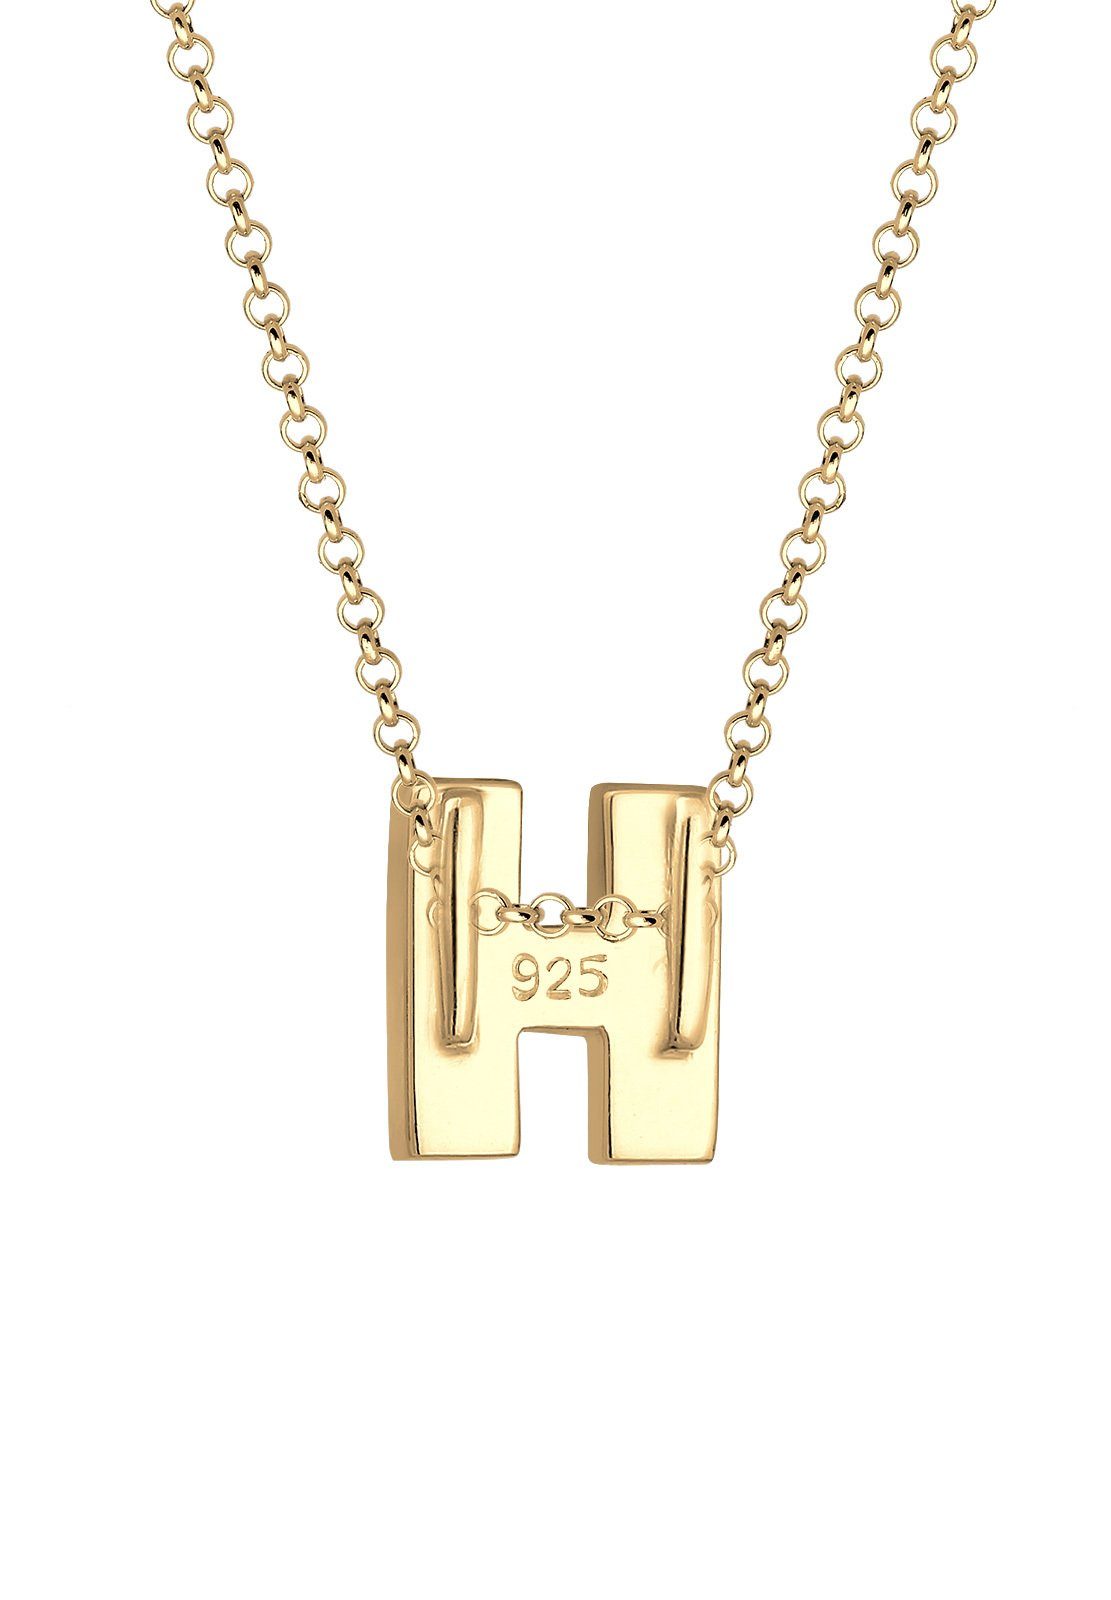 H 925 Elli Buchstabe mit Kette Gold Silber Initialen Anhänger Trend Minimal